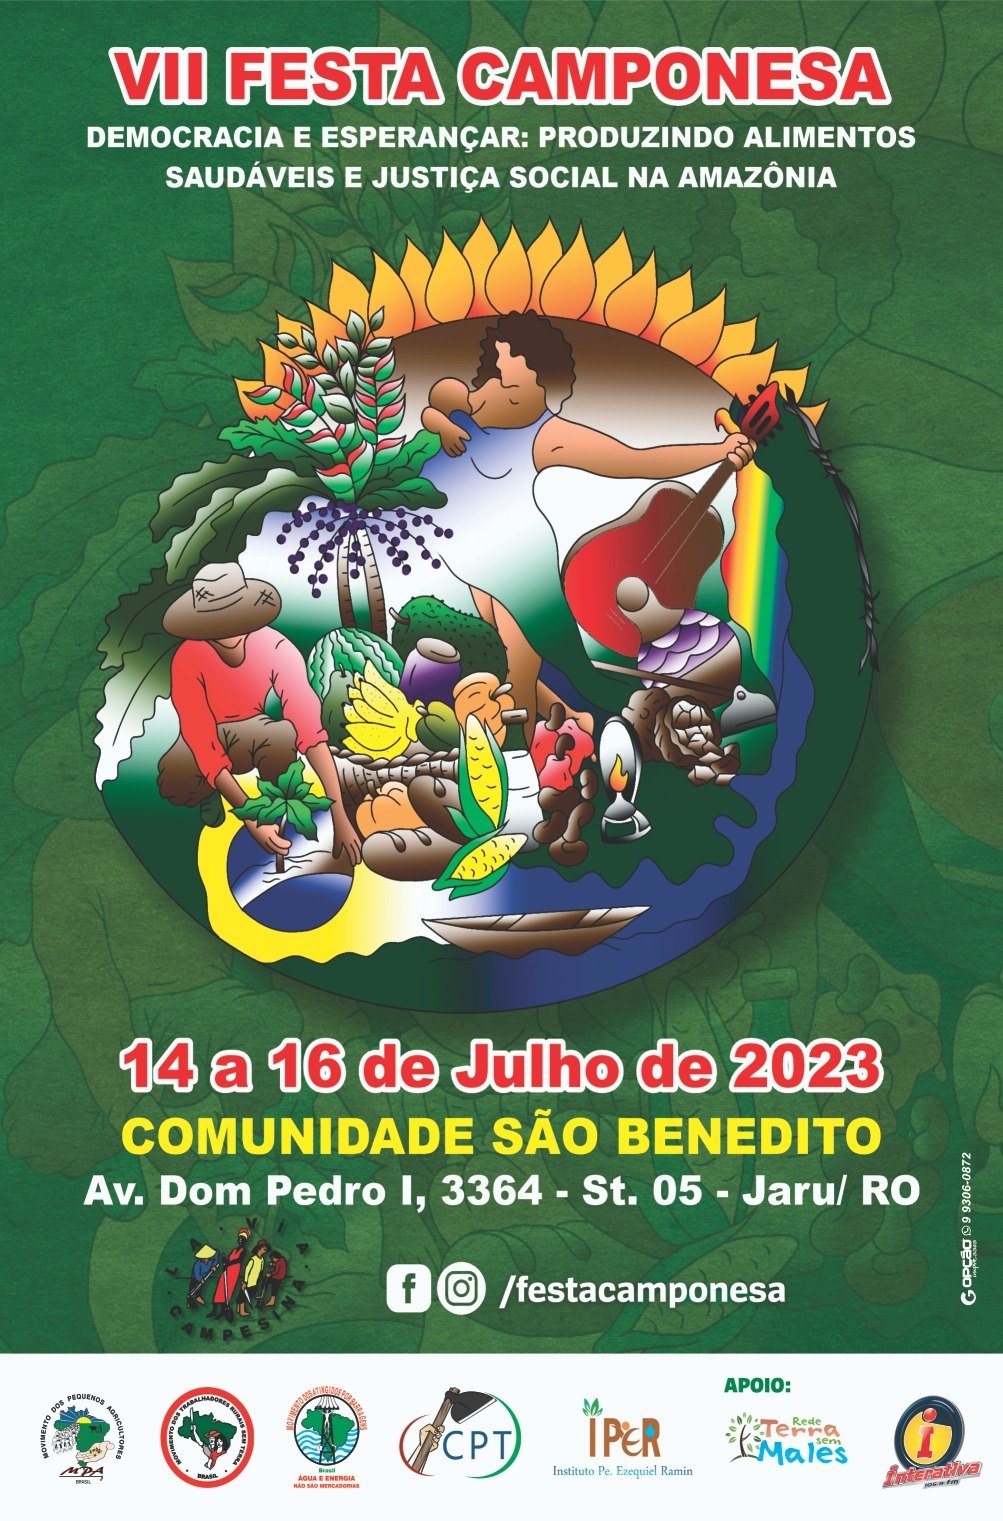 CULTURA: 7ª Festa Camponesa retorna em Rondônia no município de Jaru